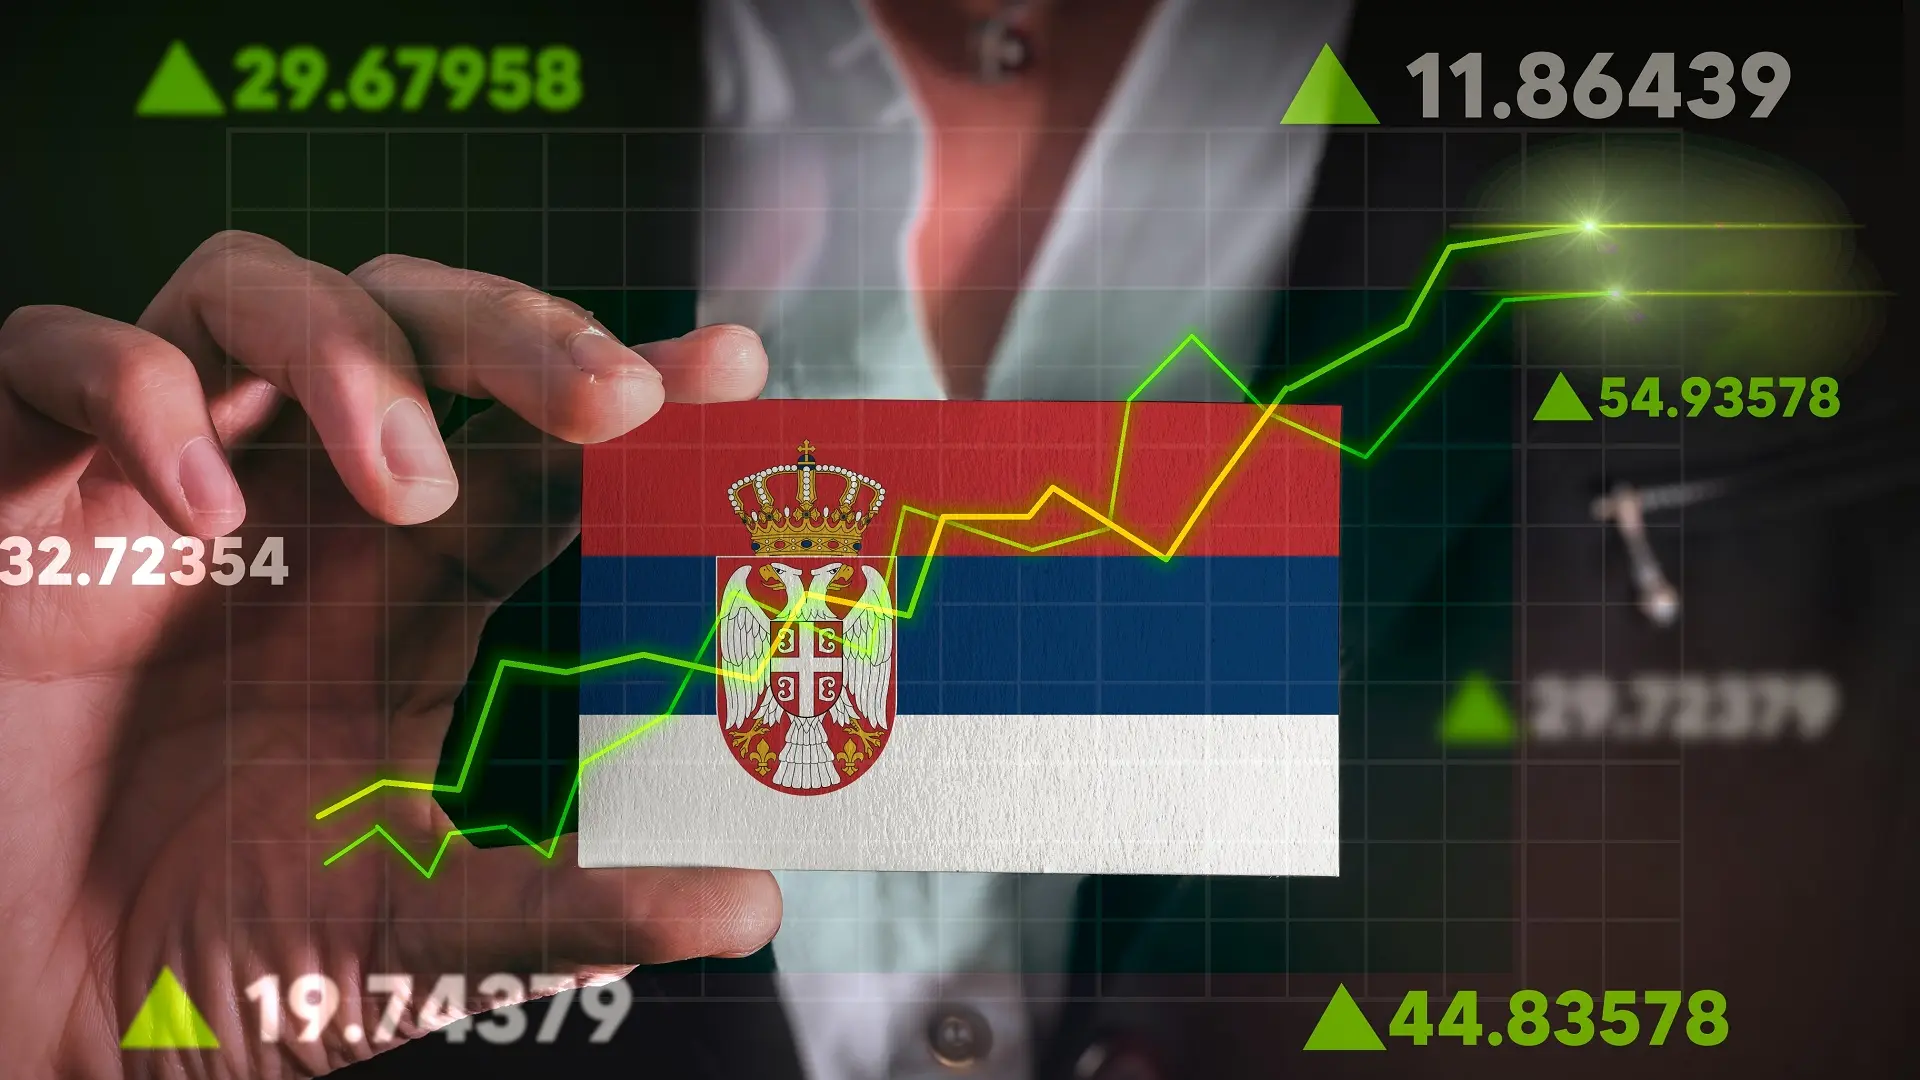 srbija, srpska ekonomija, uspešna ekonomija, strelice, strelica, grafikon, rast - shutterstock-657049da40c48.webp